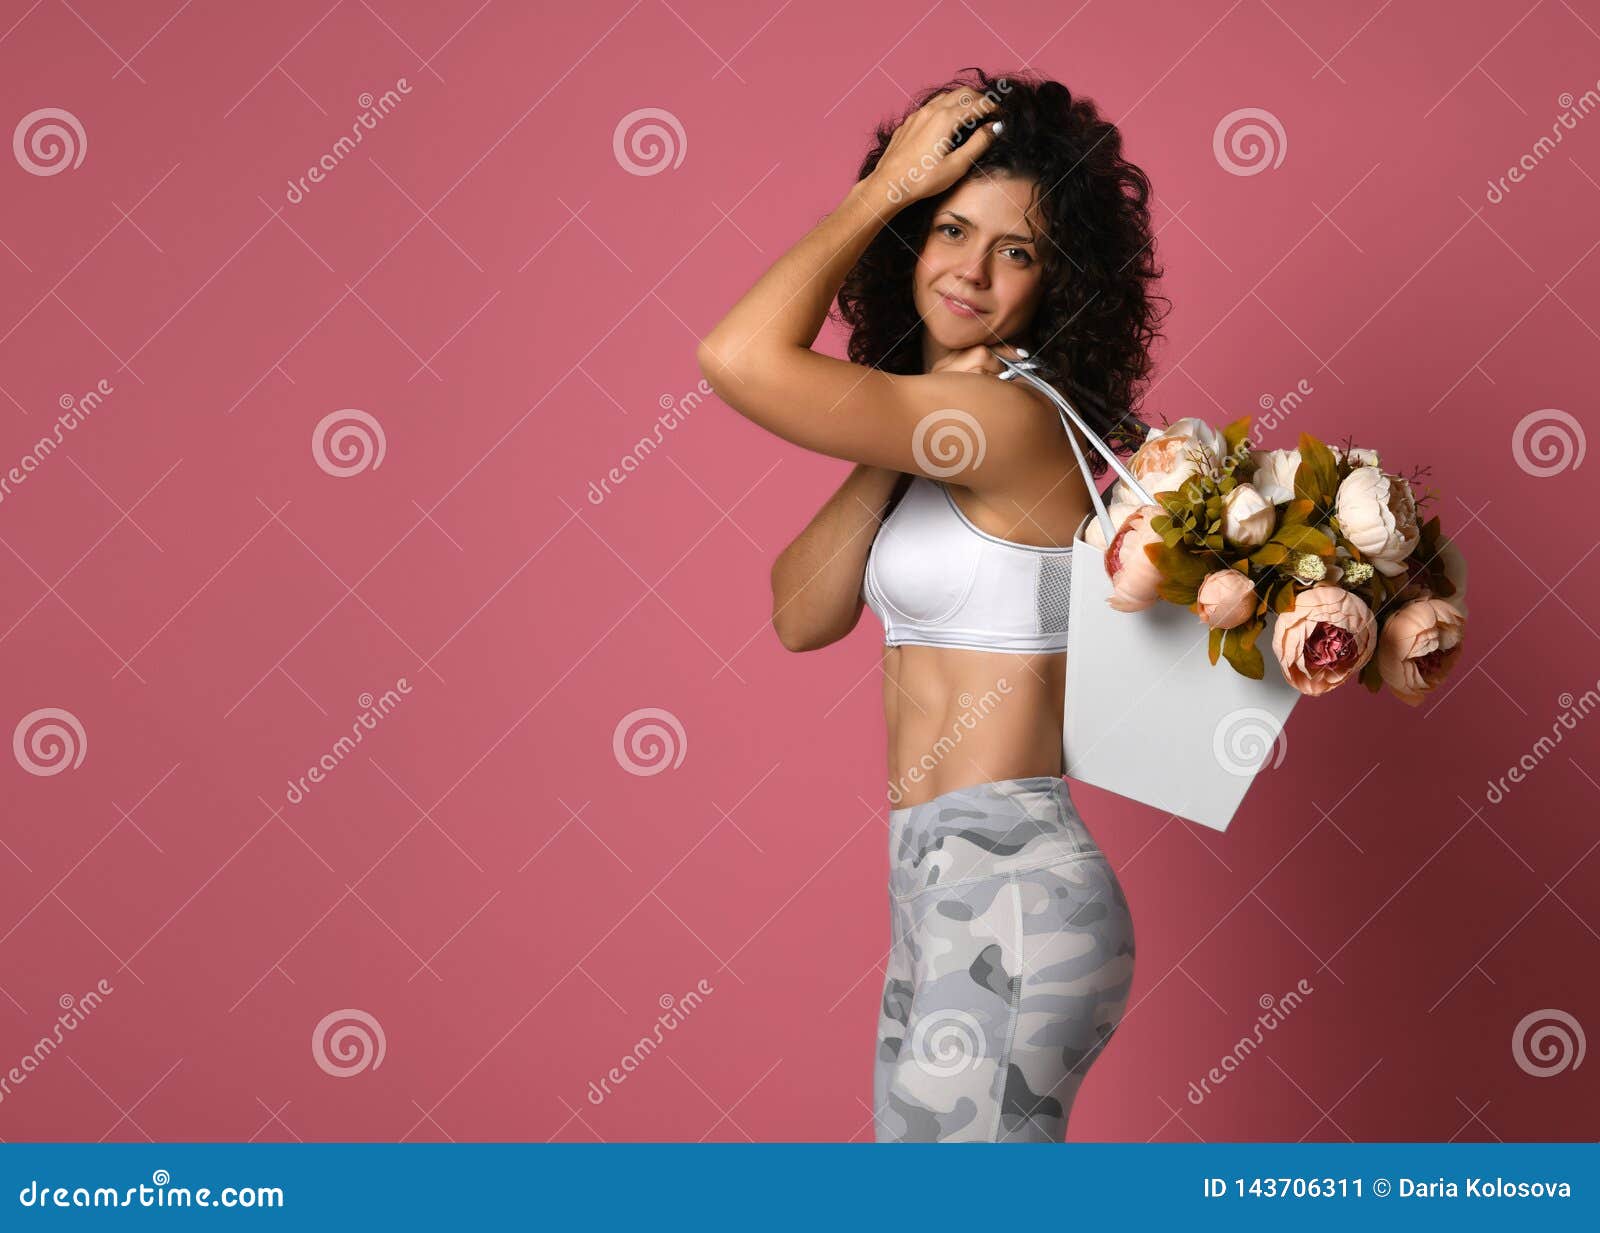 Íntimo esposas Comunista Mujer Deportiva Atractiva En Ropa De Deportes Con Los Tulipanes De Las  Flores En Un Fondo Rosado Imagen de archivo - Imagen de retrato, morena:  143706311